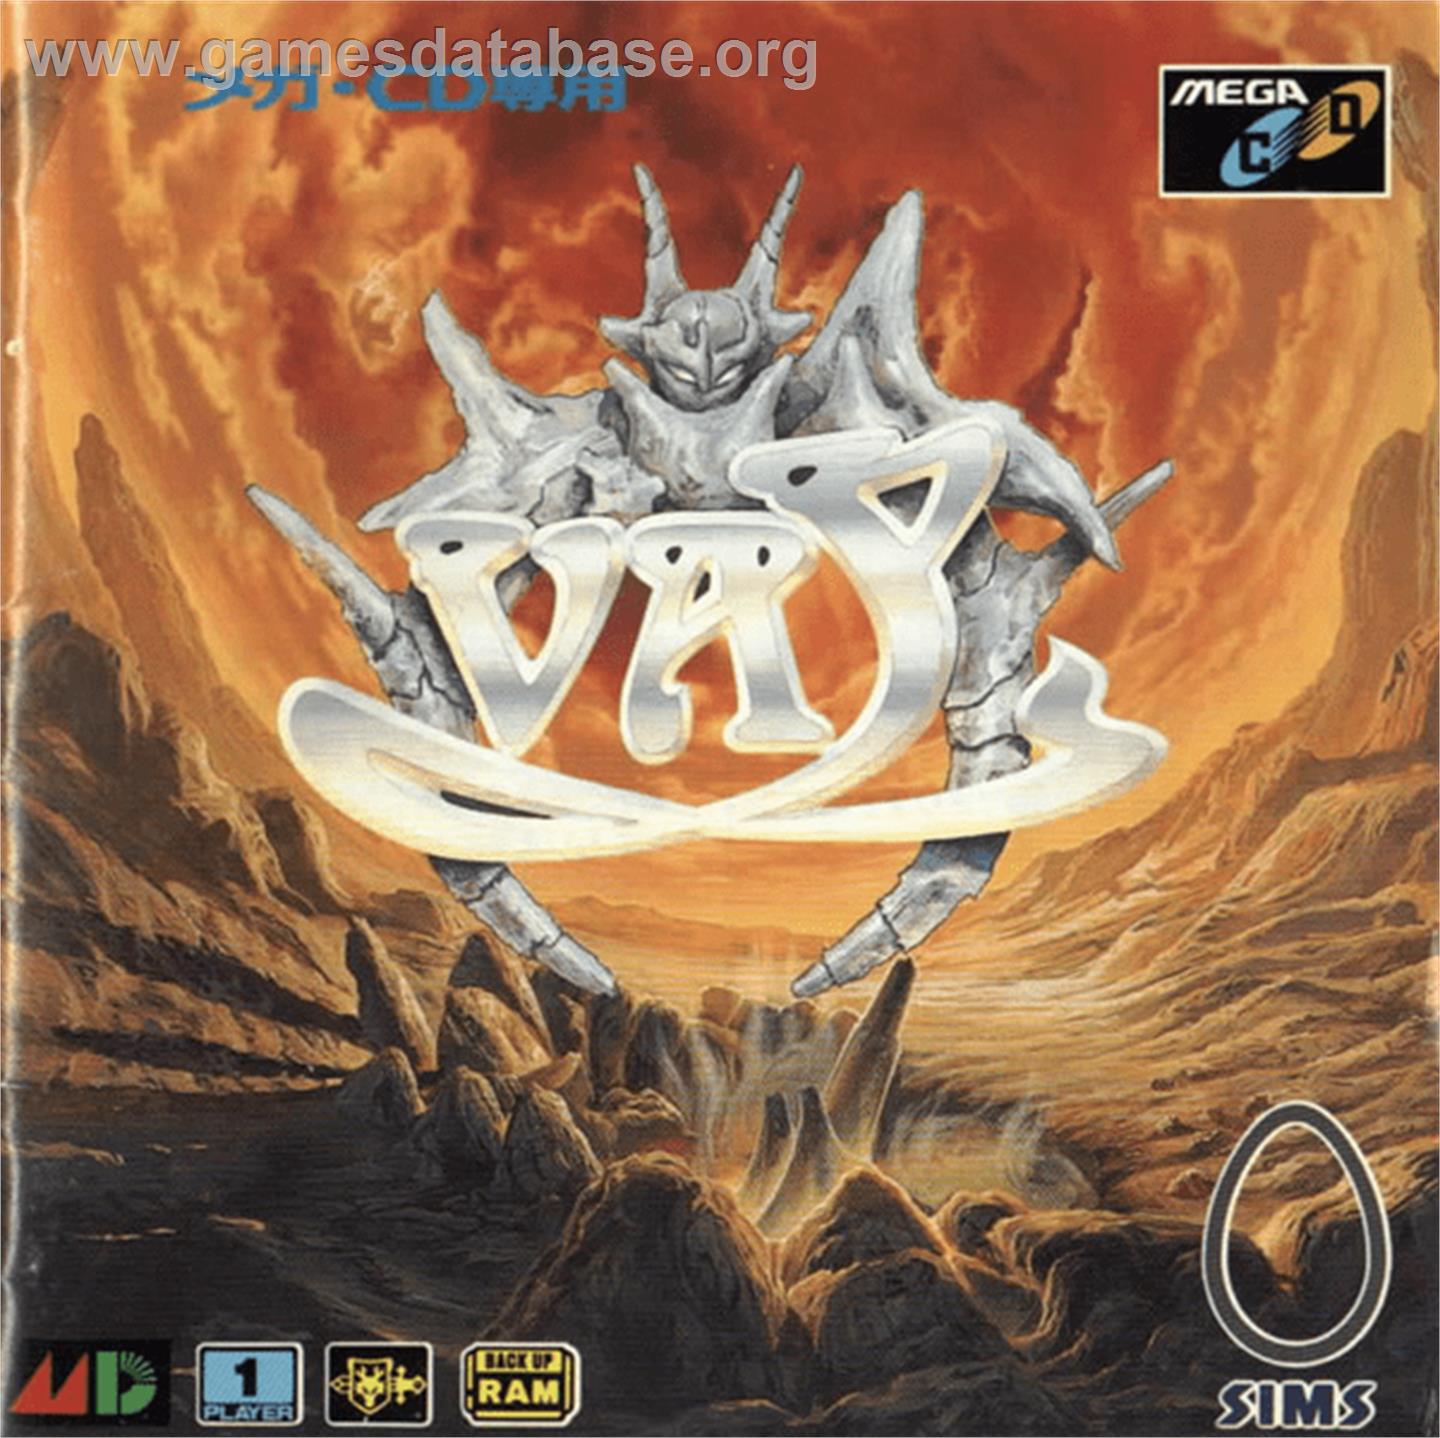 Vay - Sega CD - Artwork - Box